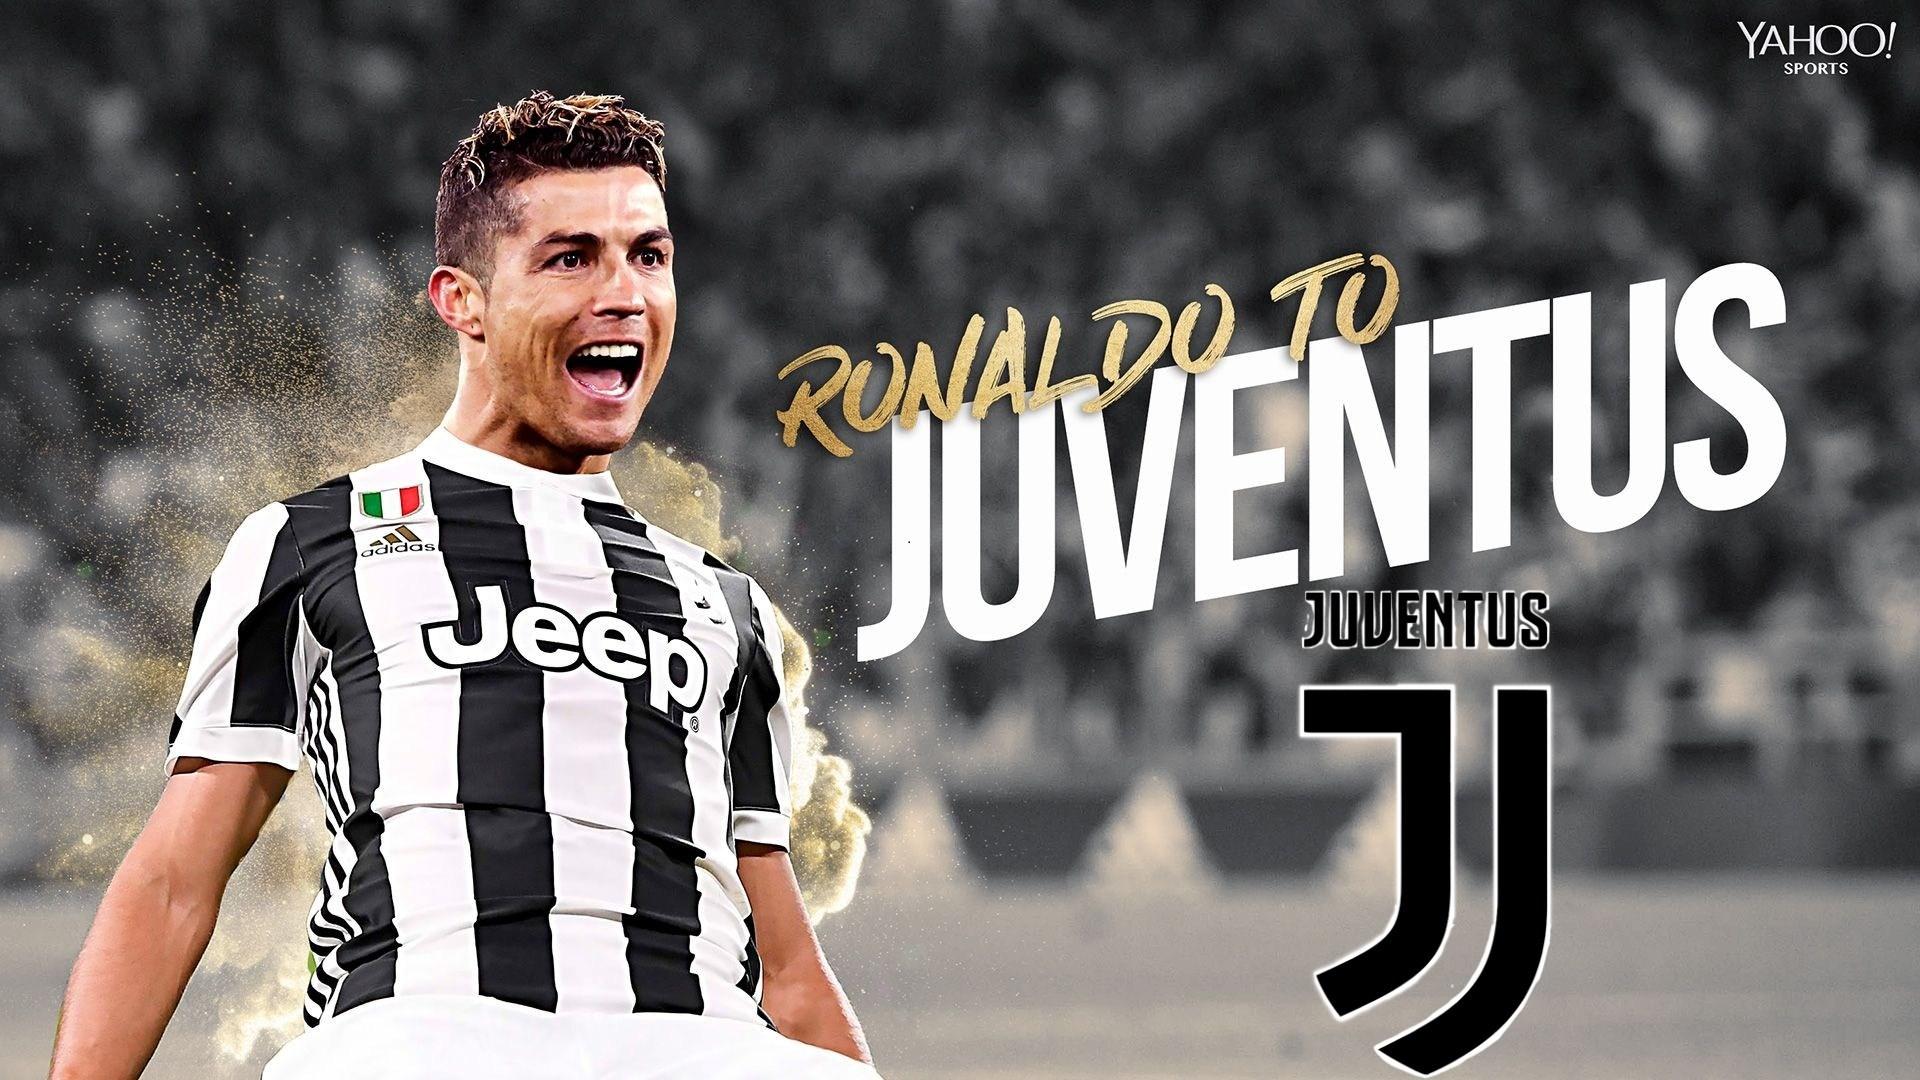 Wallpaper Ronaldo Juventus 2018